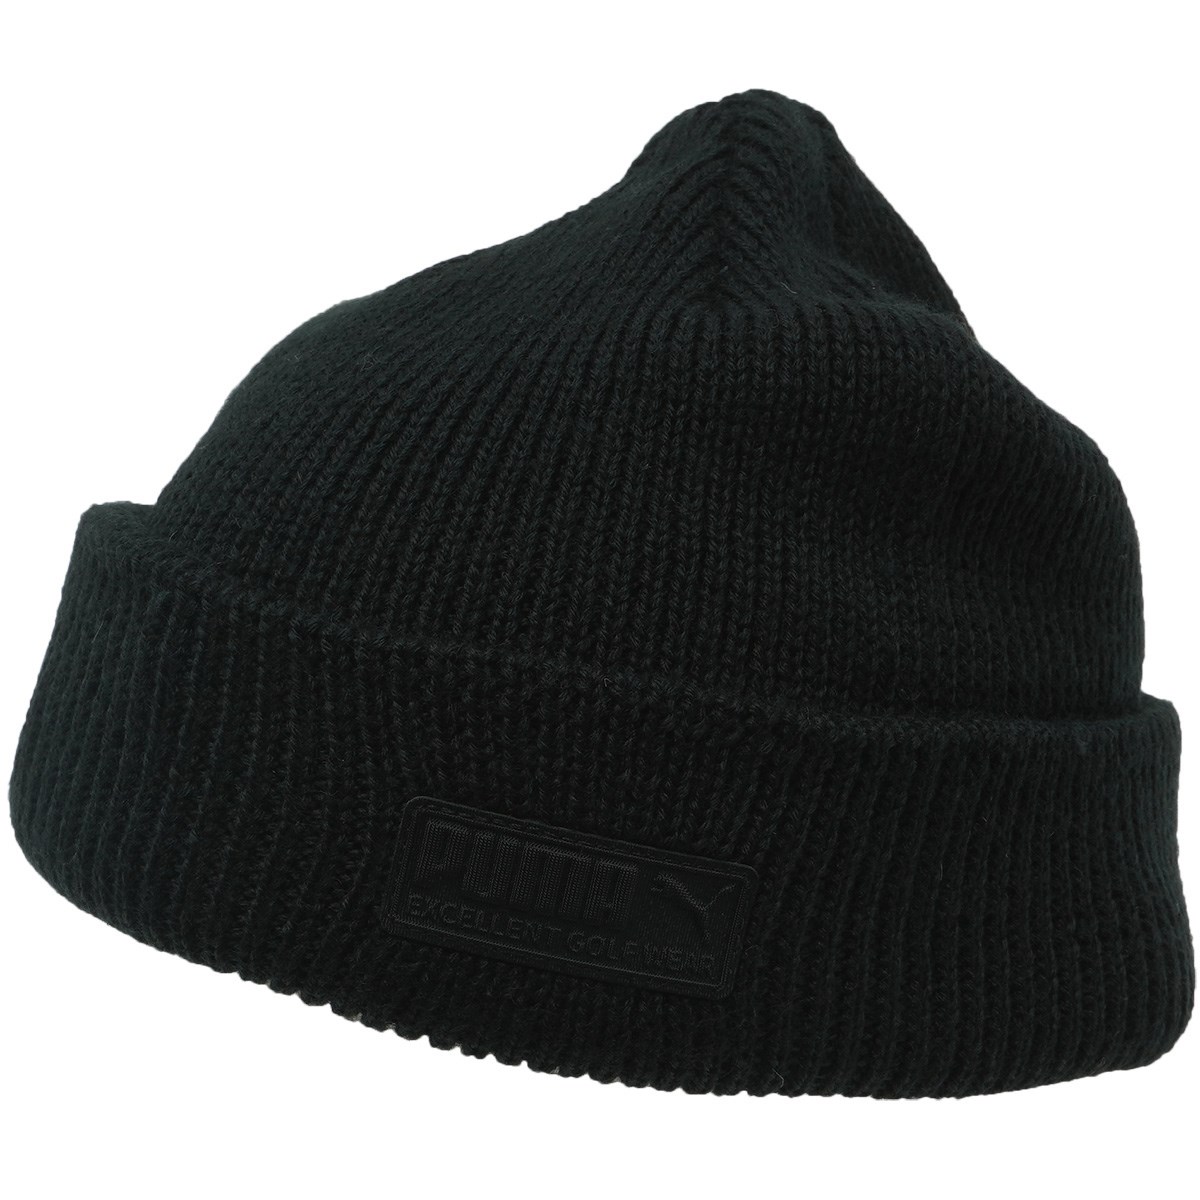 [アウトレット] [在庫限りのお買い得商品] プーマ PUMA EGW ビーニー プーマ ブラック 01 メンズ ゴルフウェア 帽子